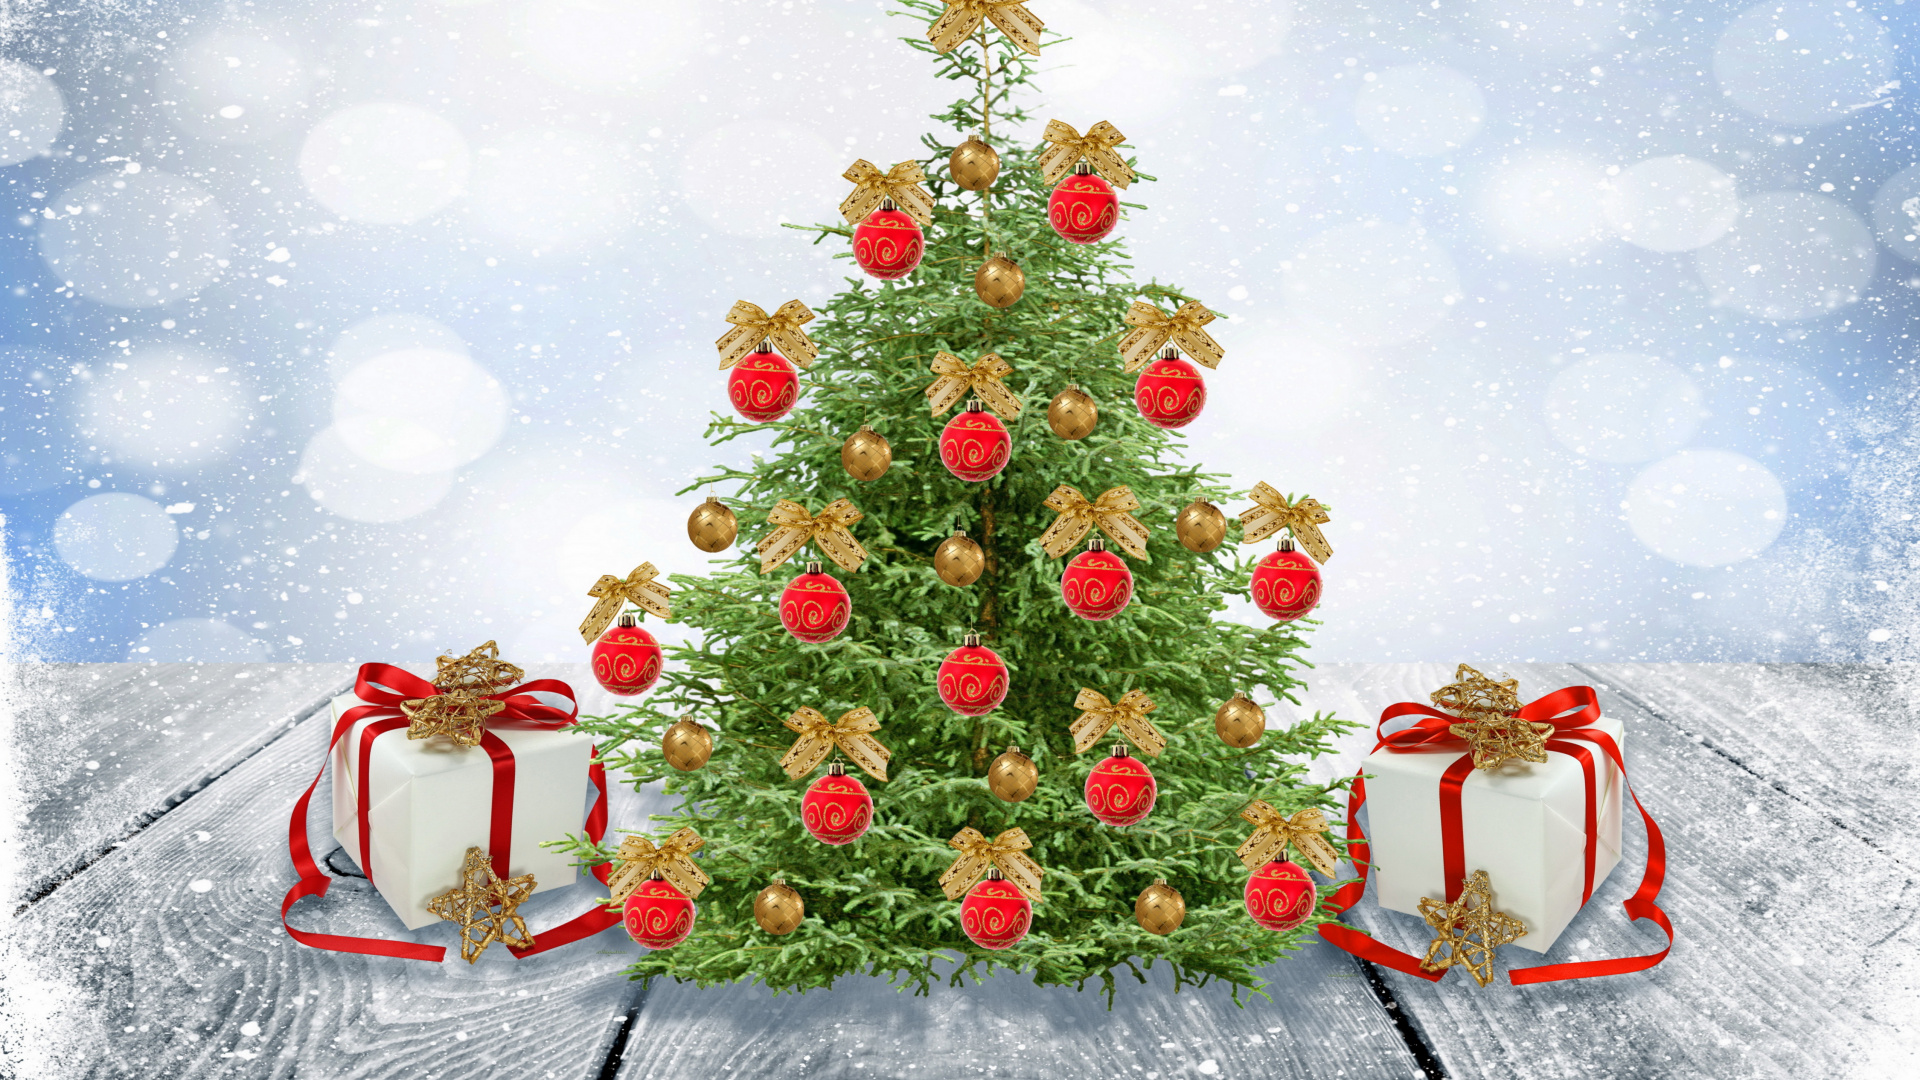 新的一年, 圣诞节那天, 圣诞老人, 圣诞树, 圣诞装饰 壁纸 1920x1080 允许